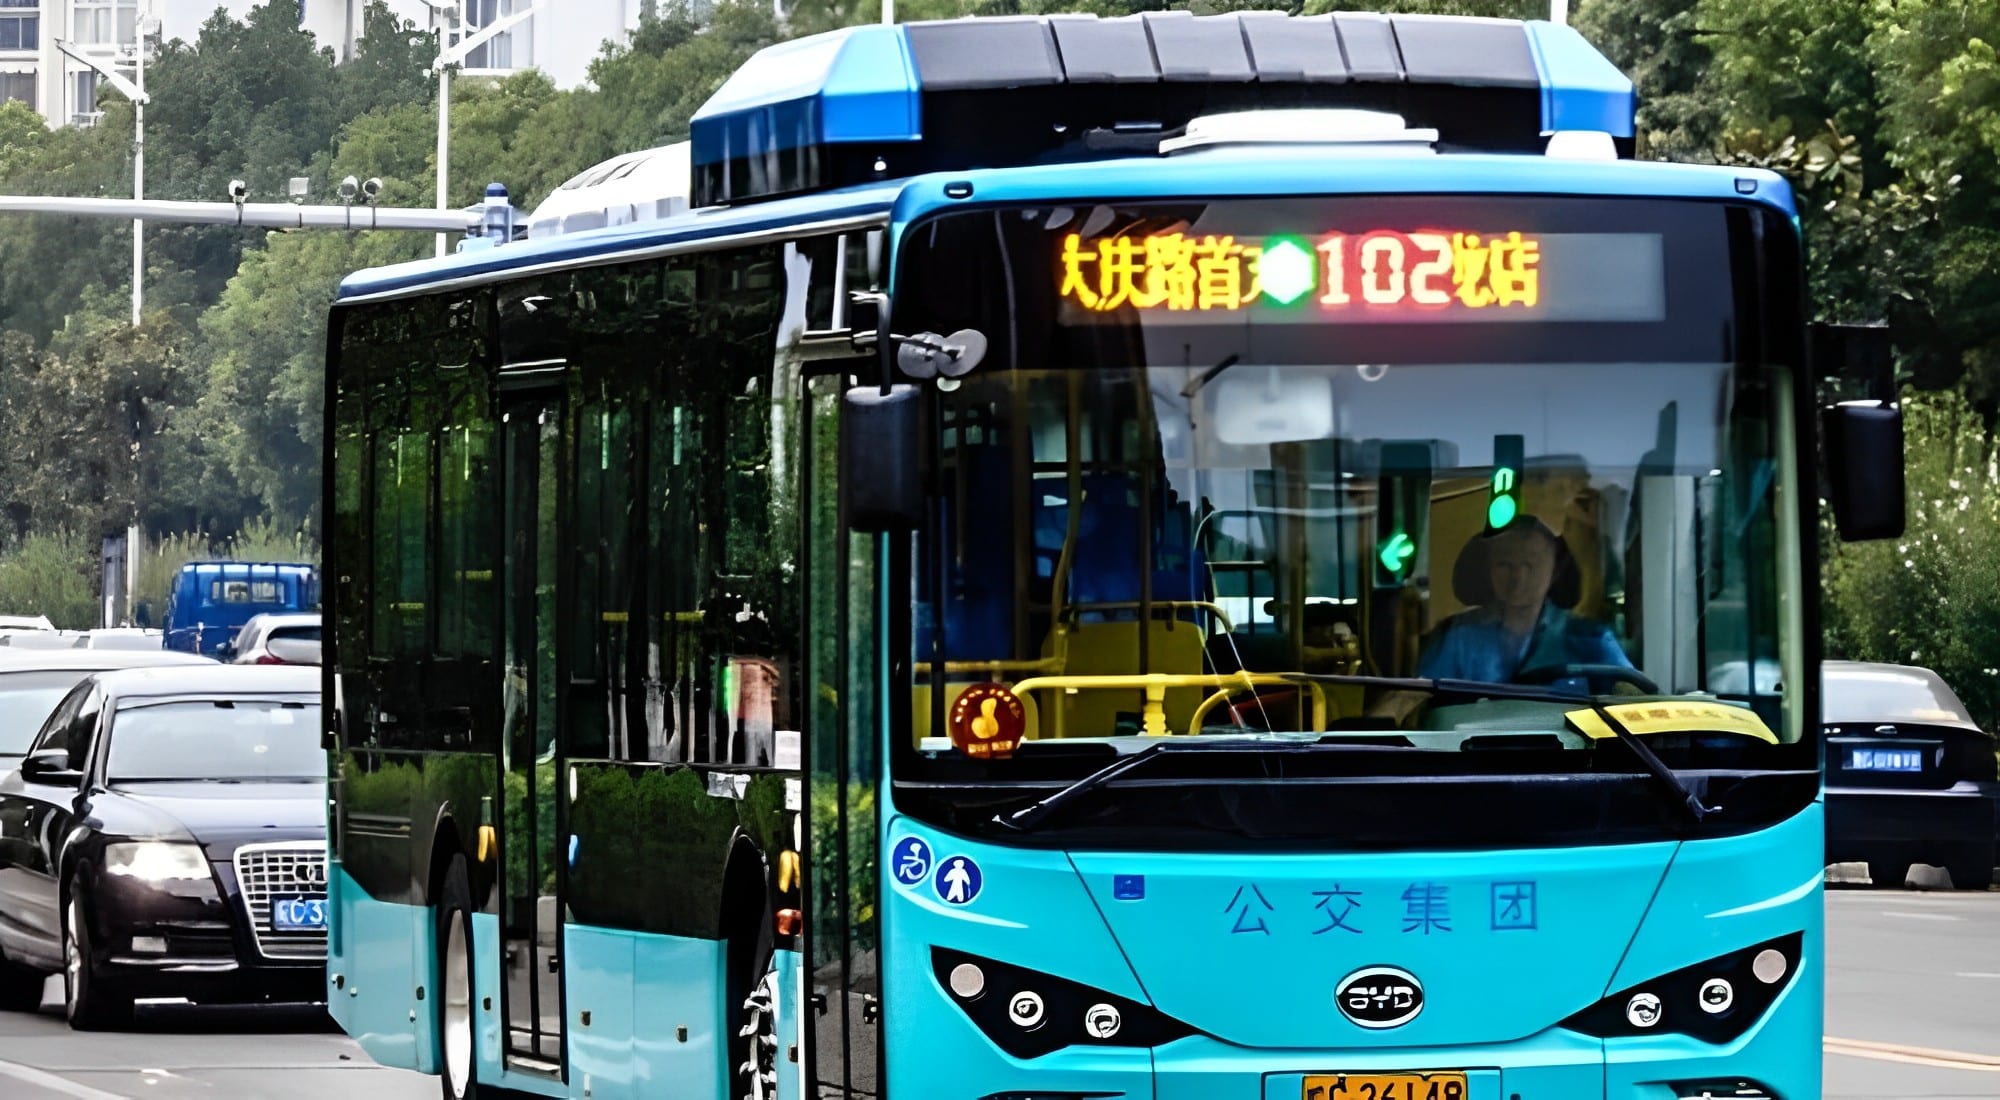 Nếu muốn tiết kiệm chi phí, bạn nên di chuyển bằng xe buýt khi đến Trung Quốc